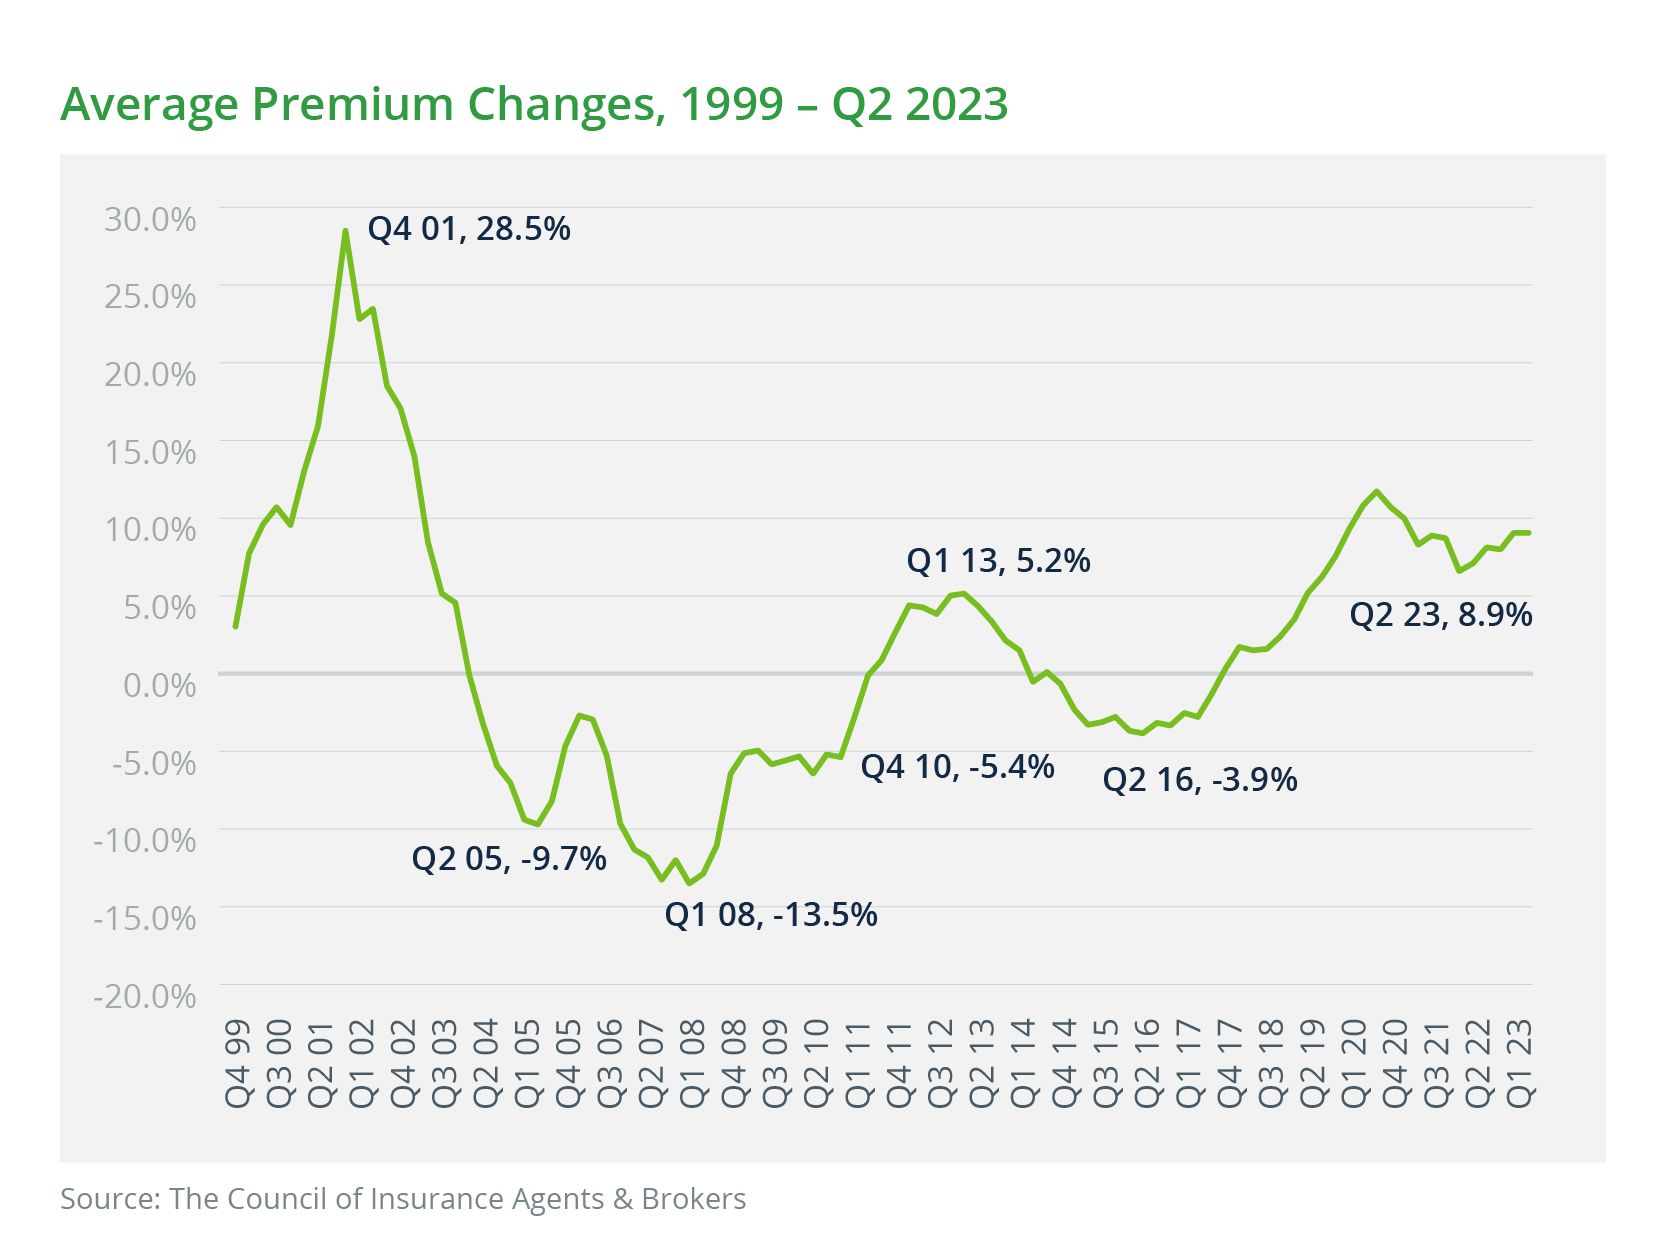 Average Premium Changes, 1999 - Q2 2023